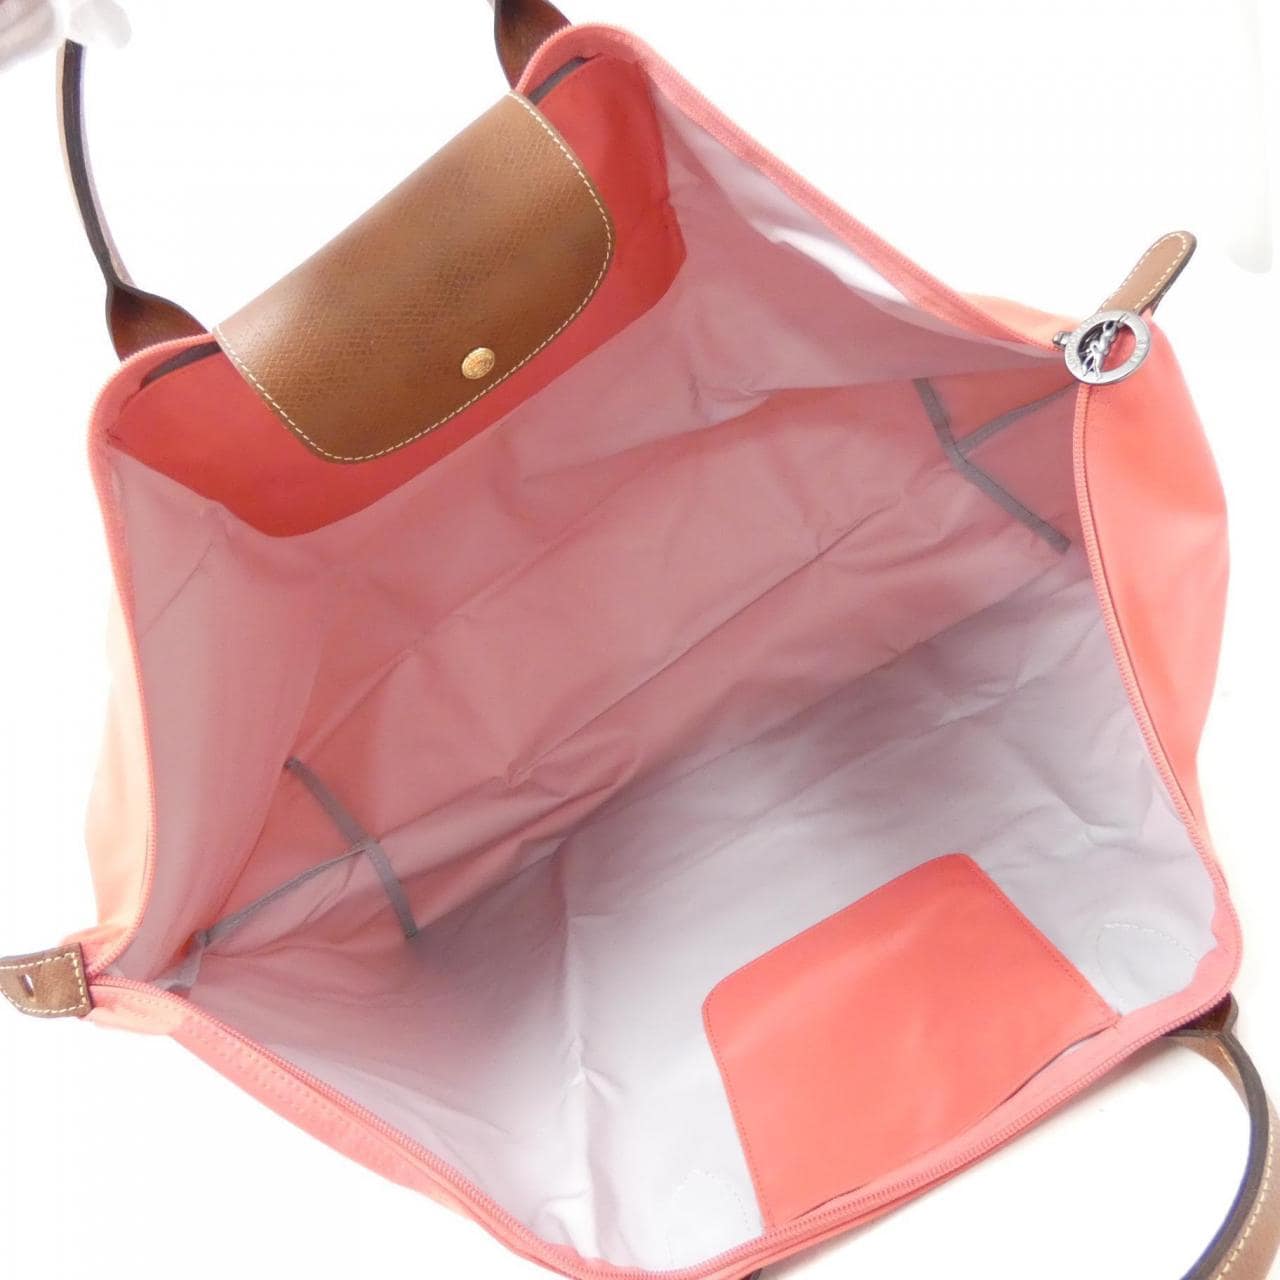 [BRAND NEW] Longchamp Le Pliage M 1625 089 Boston Bag